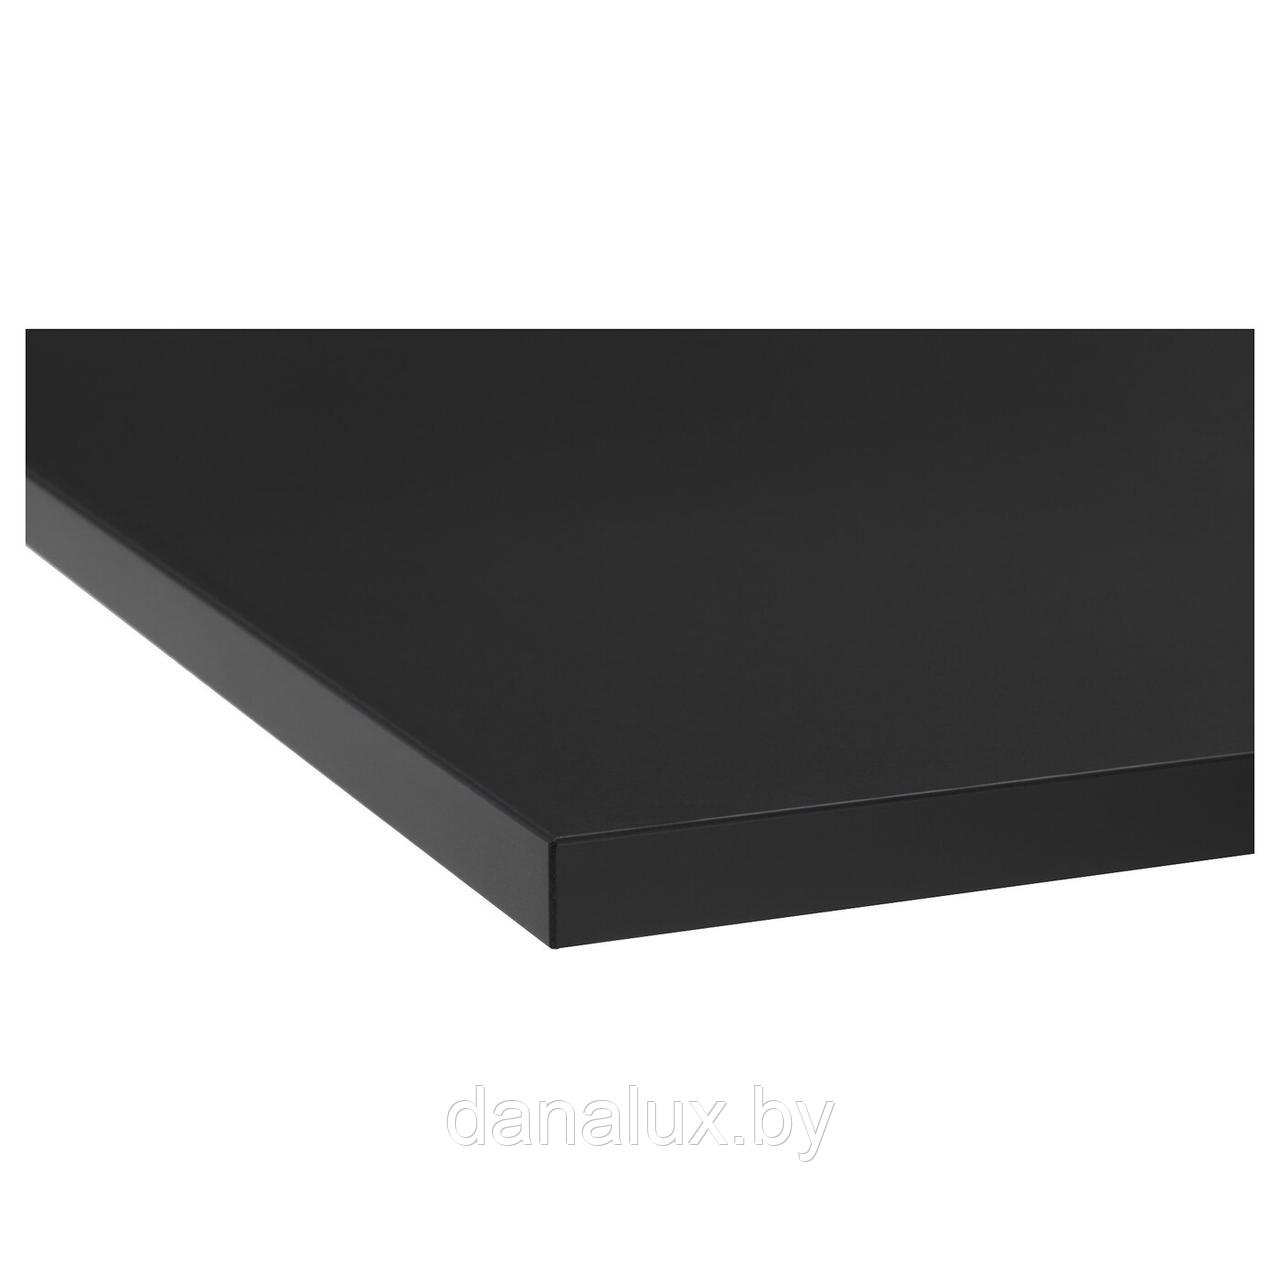 Столешница Дана Топ постформинг цвет черный 40 см + влагостойкий лак